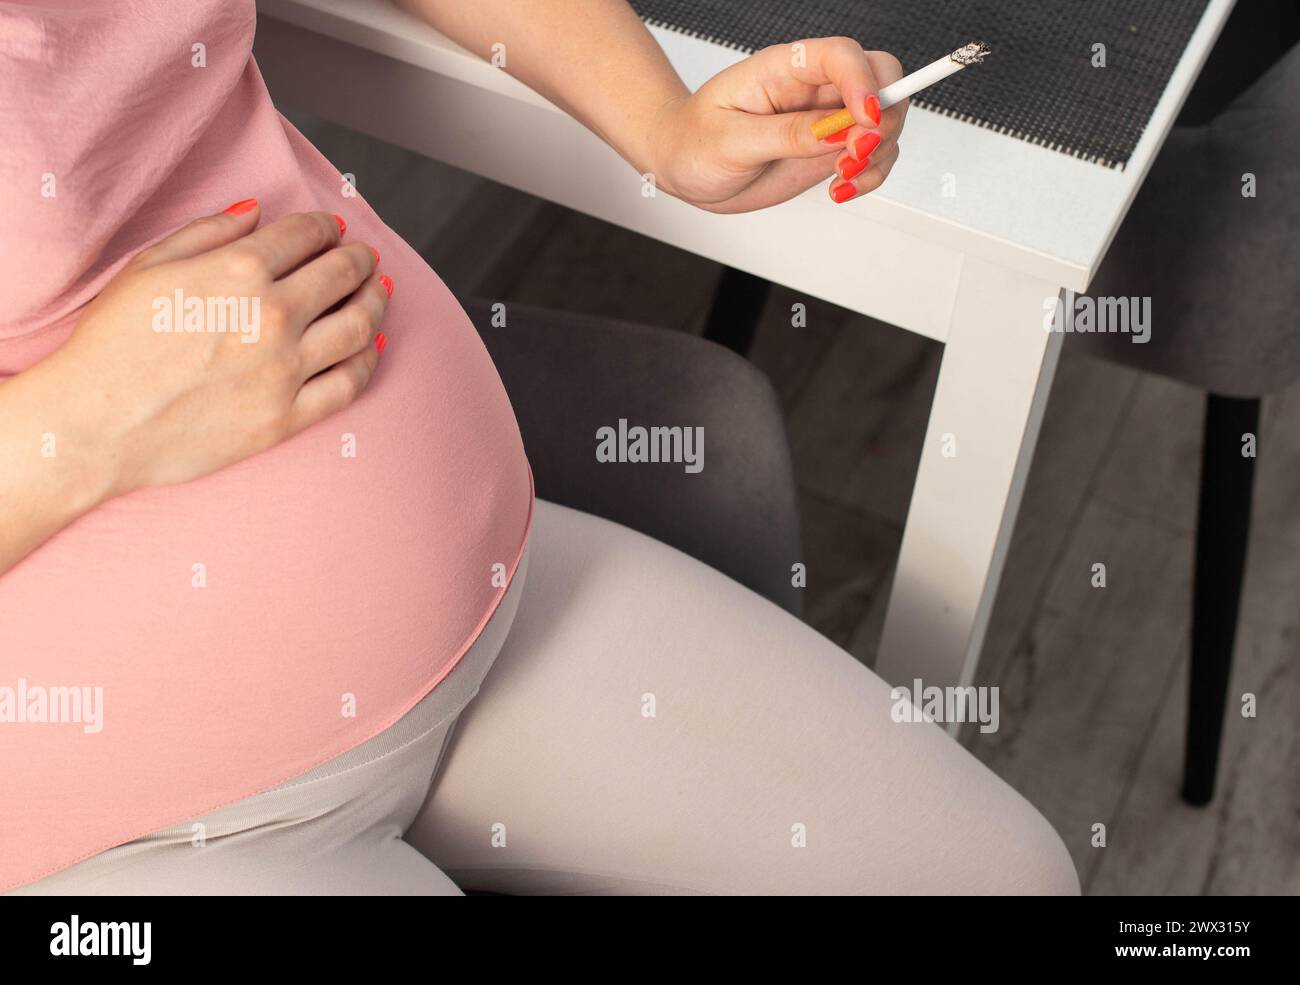 Una ragazza incinta con una grande pancia tiene una sigaretta in mano. Fumare durante la gravidanza. Danno alla salute della madre e del bambino. Foto Stock